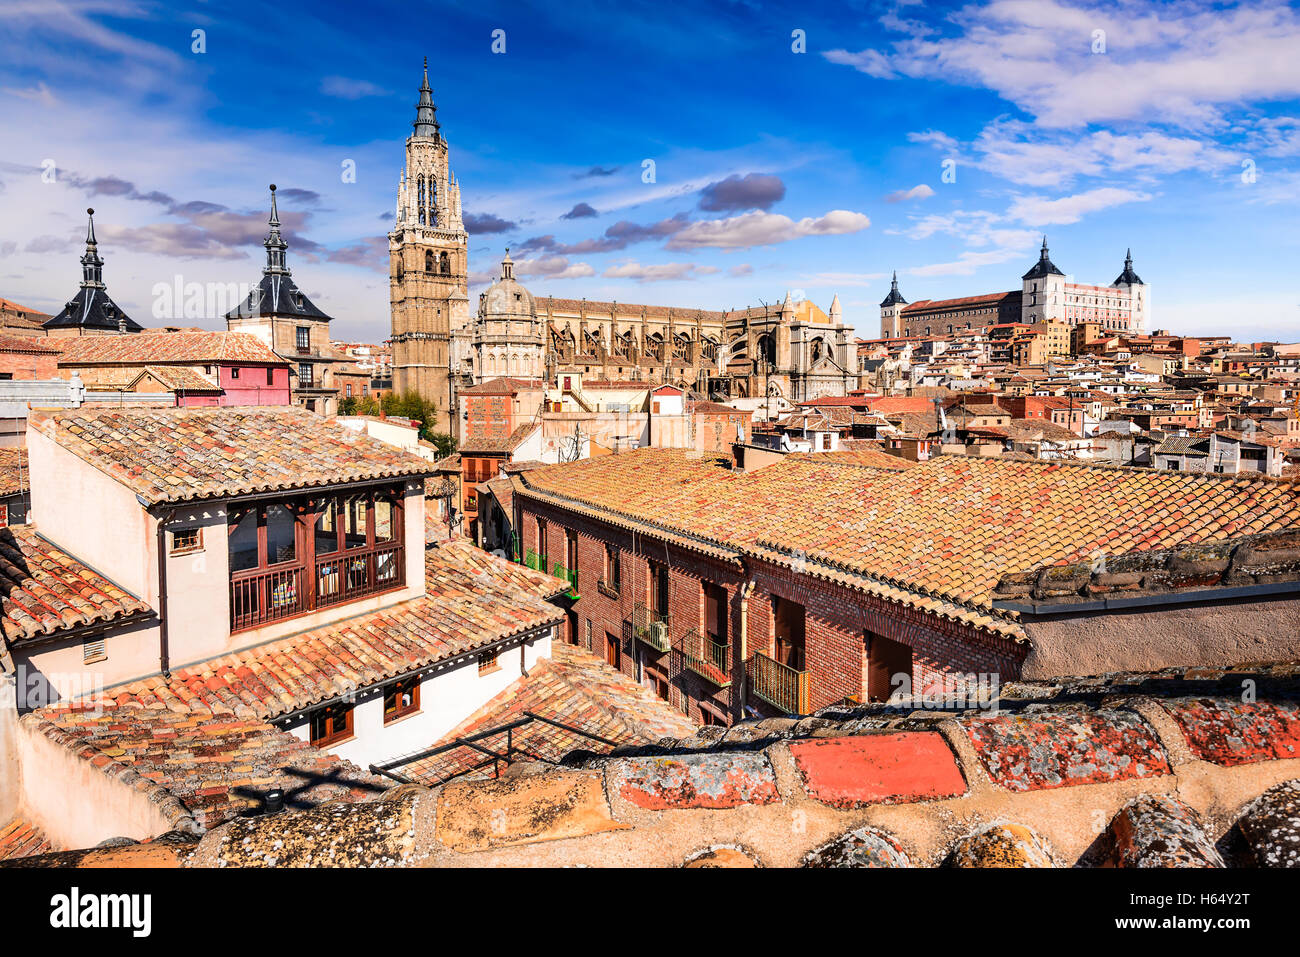 Toledo, Espagne. Catedral et Alcazar dans l'ancienne ville sur une colline sur le Tage, Castilla la Mancha Espana médiévale. Banque D'Images